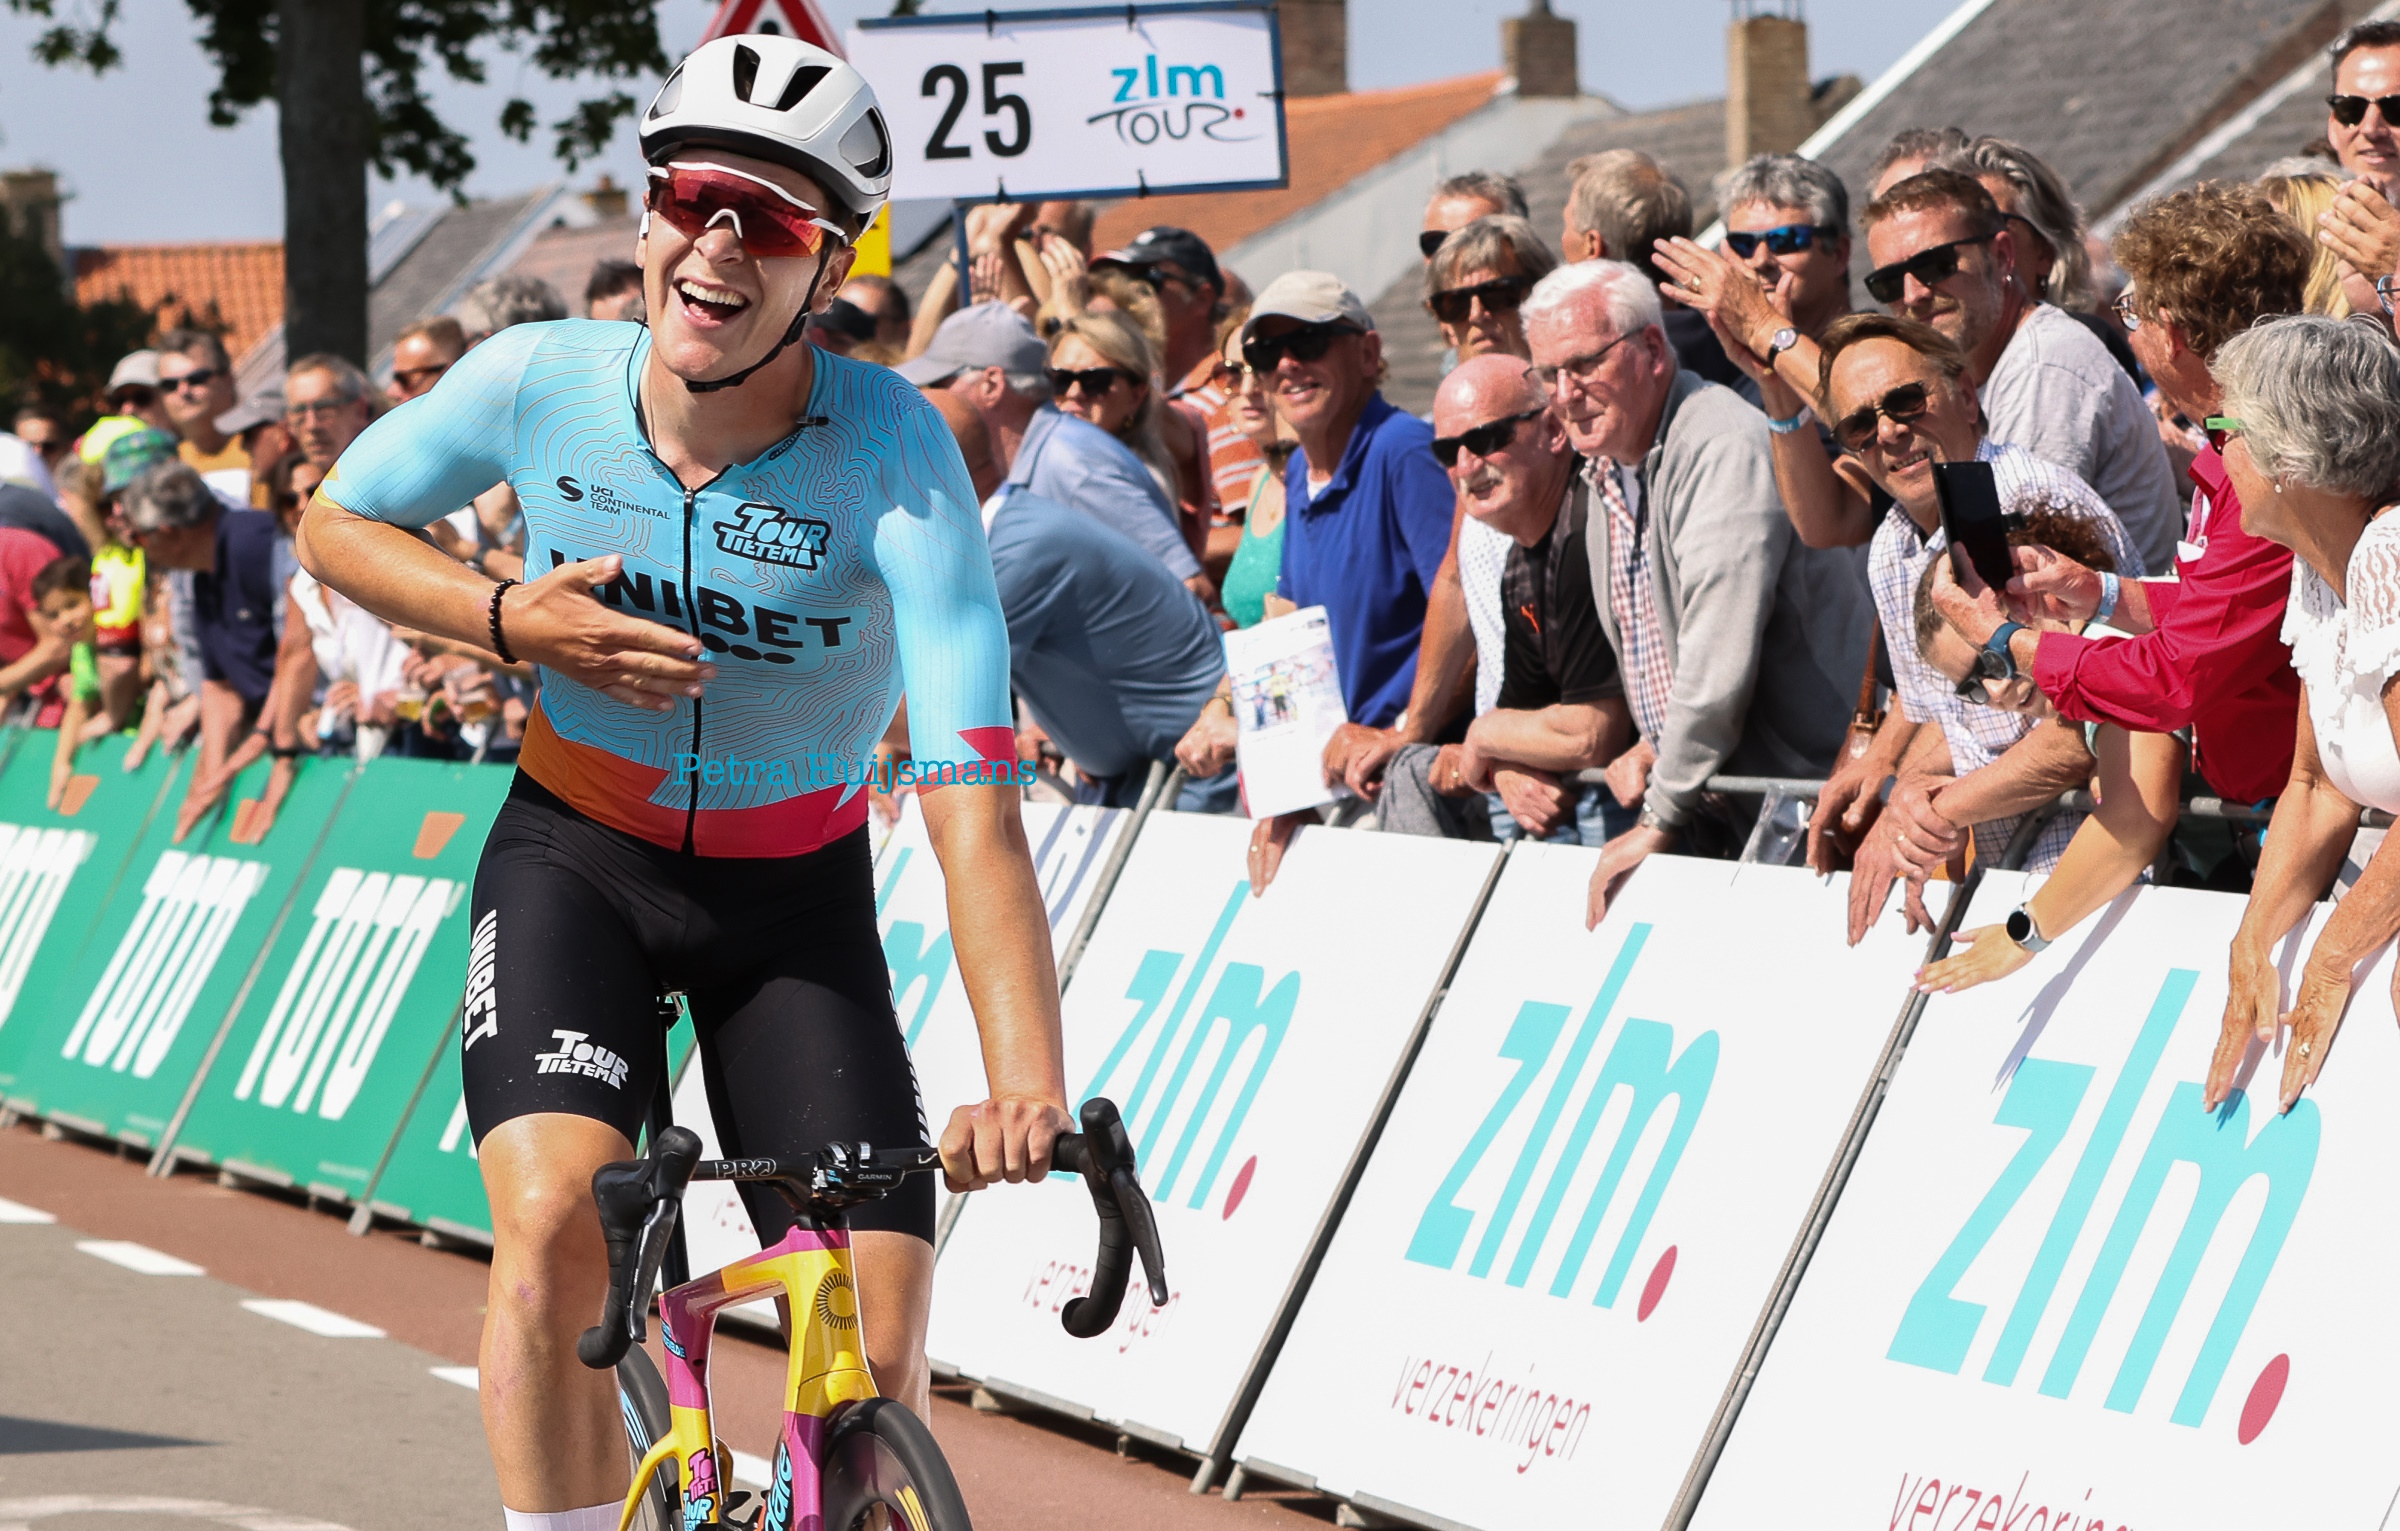 Йентл Вандевельде одержал уверенную победу на первом этапе велогонки ZLM Tour